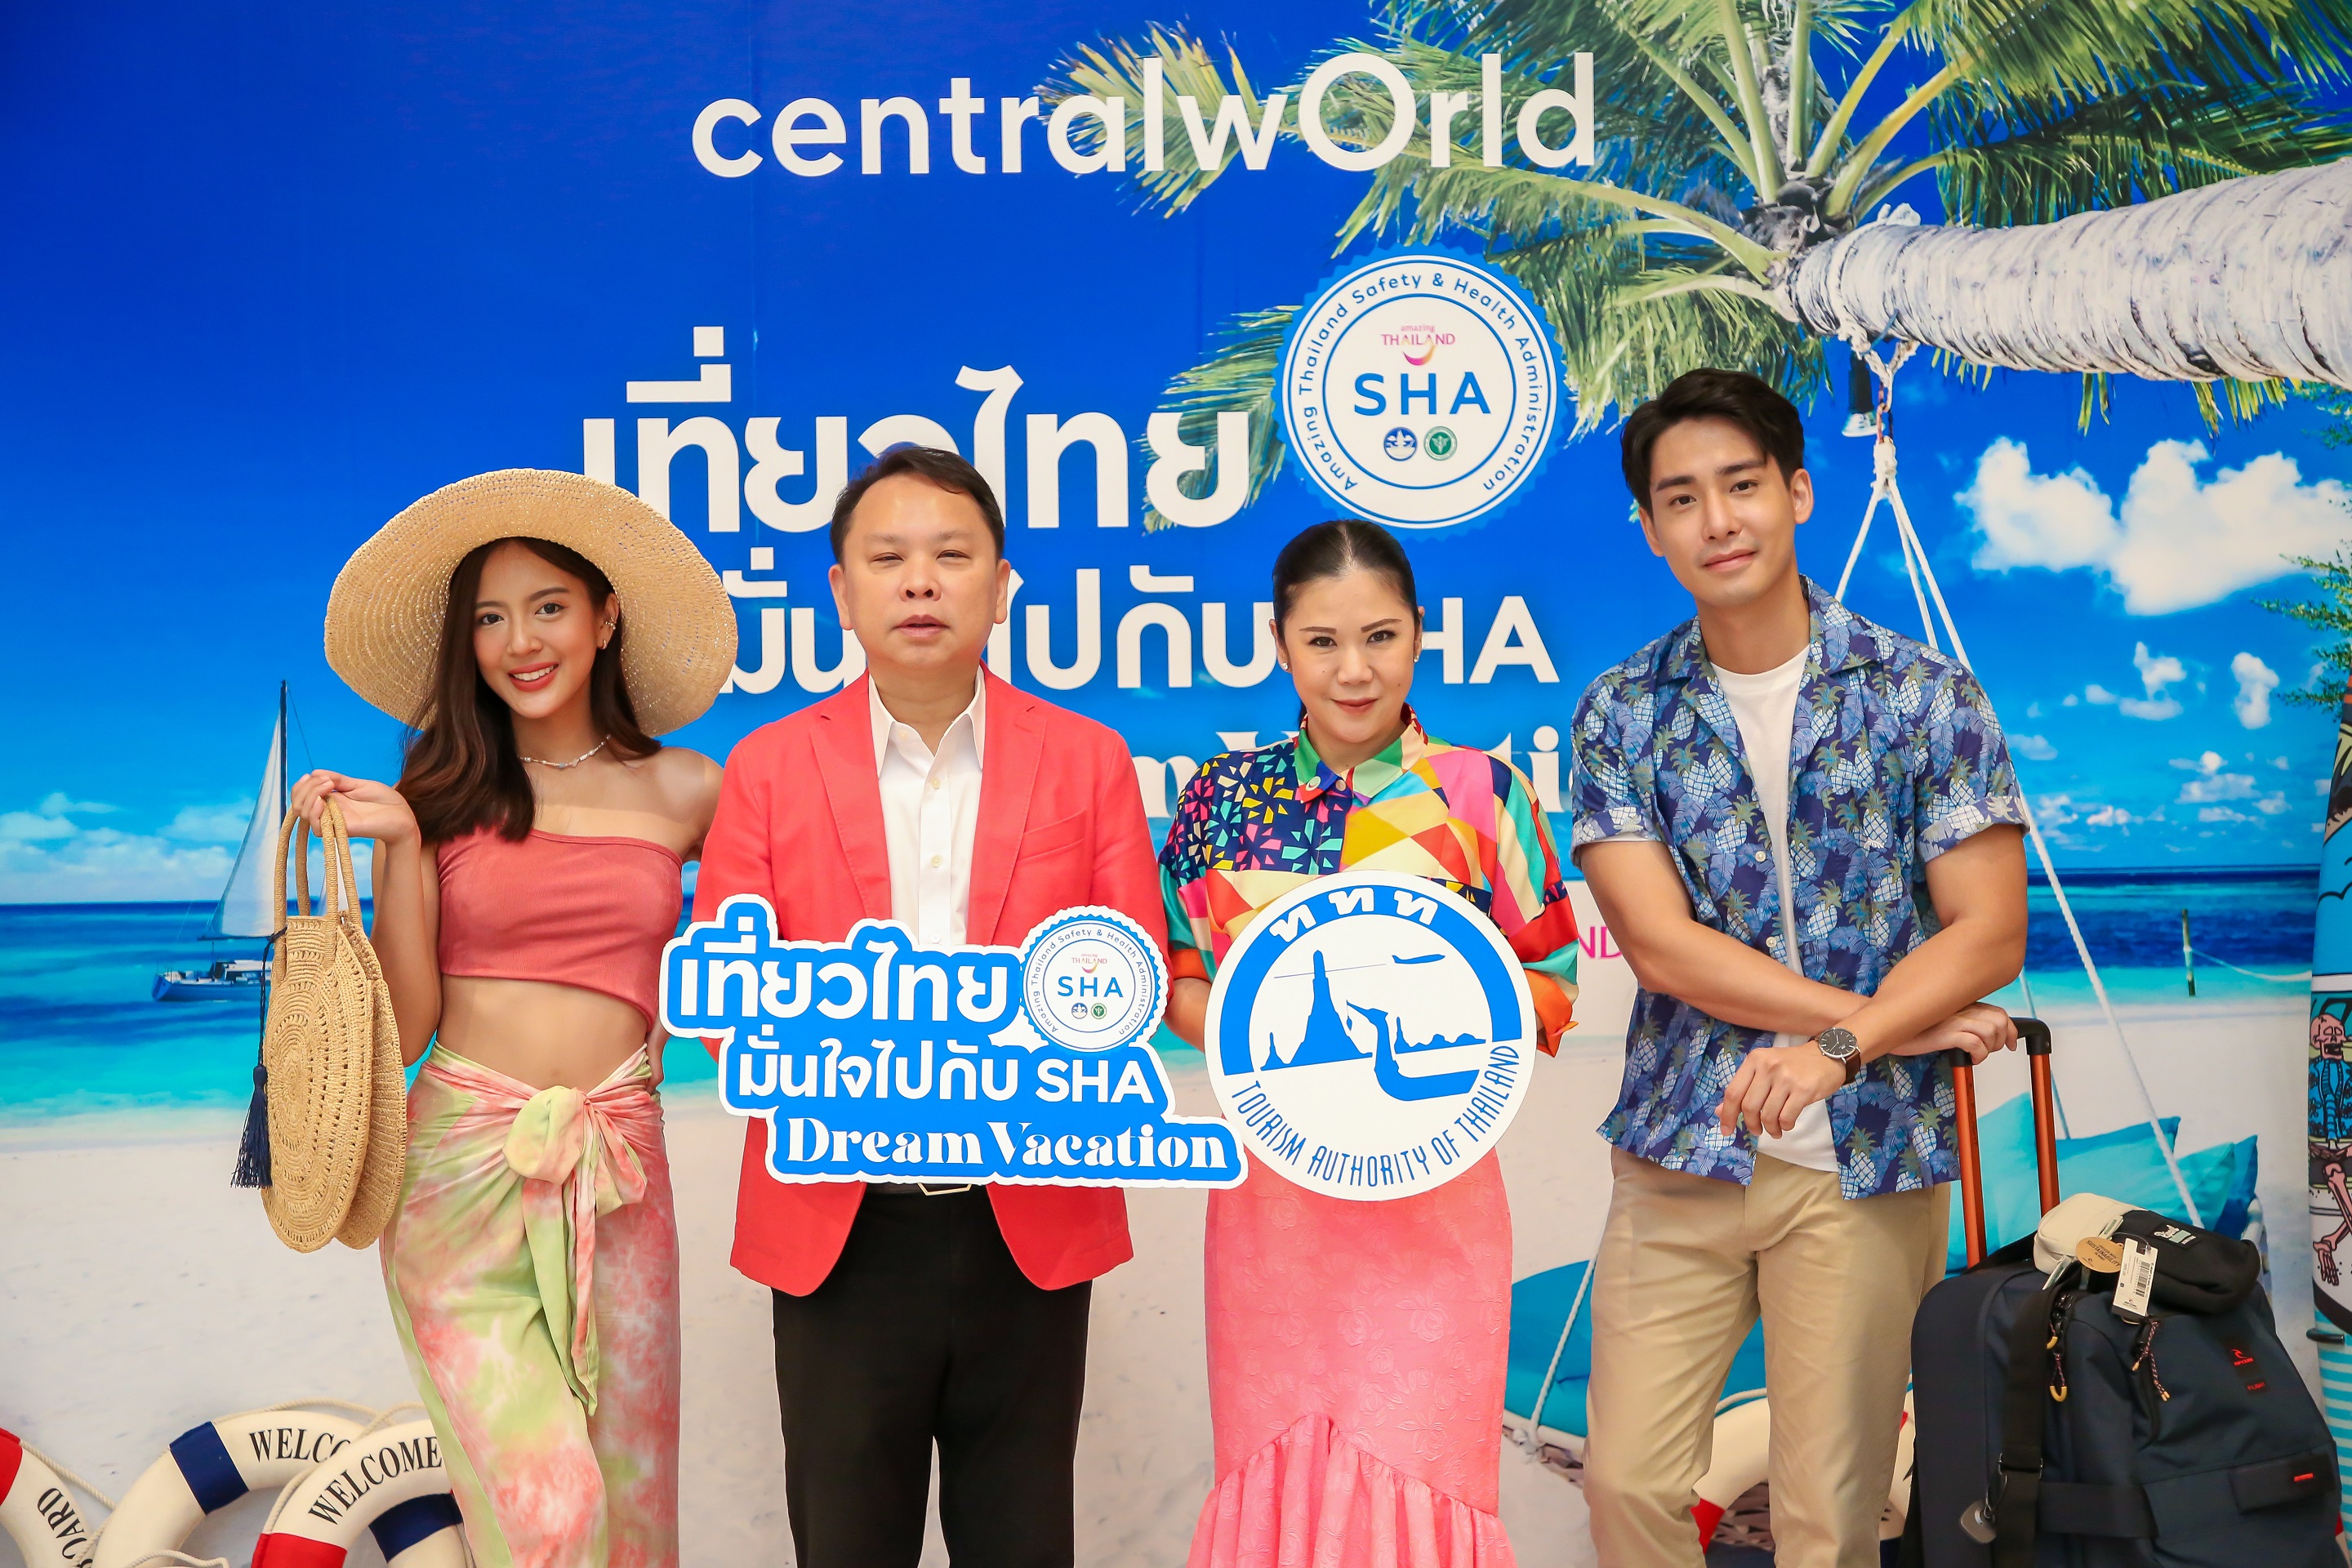 เซ็นทรัลพัฒนา จับมือ ททท. ชวนคนไทยเที่ยวไทยมั่นใจไปกับ SHA Dream Vacation @centralwOrld เริ่ม 7-11 ต.ค. 63